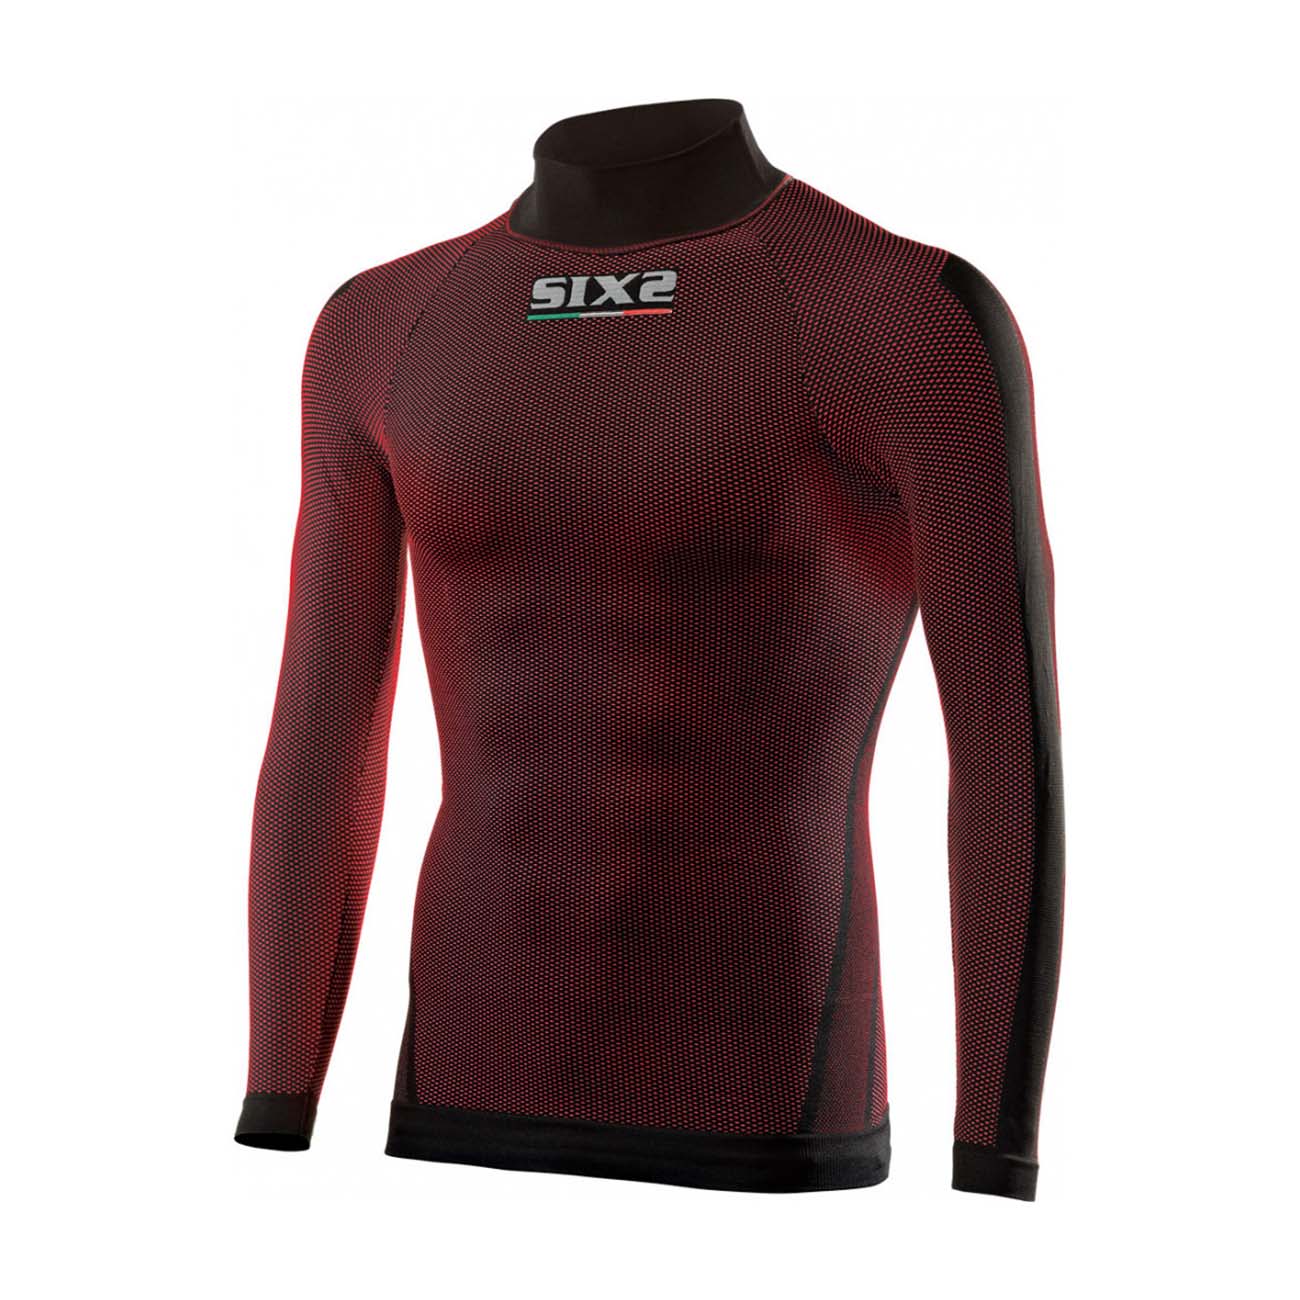 
                SIX2 Cyklistické tričko s dlhým rukávom - TS2 II - červená/bordová XS-S
            